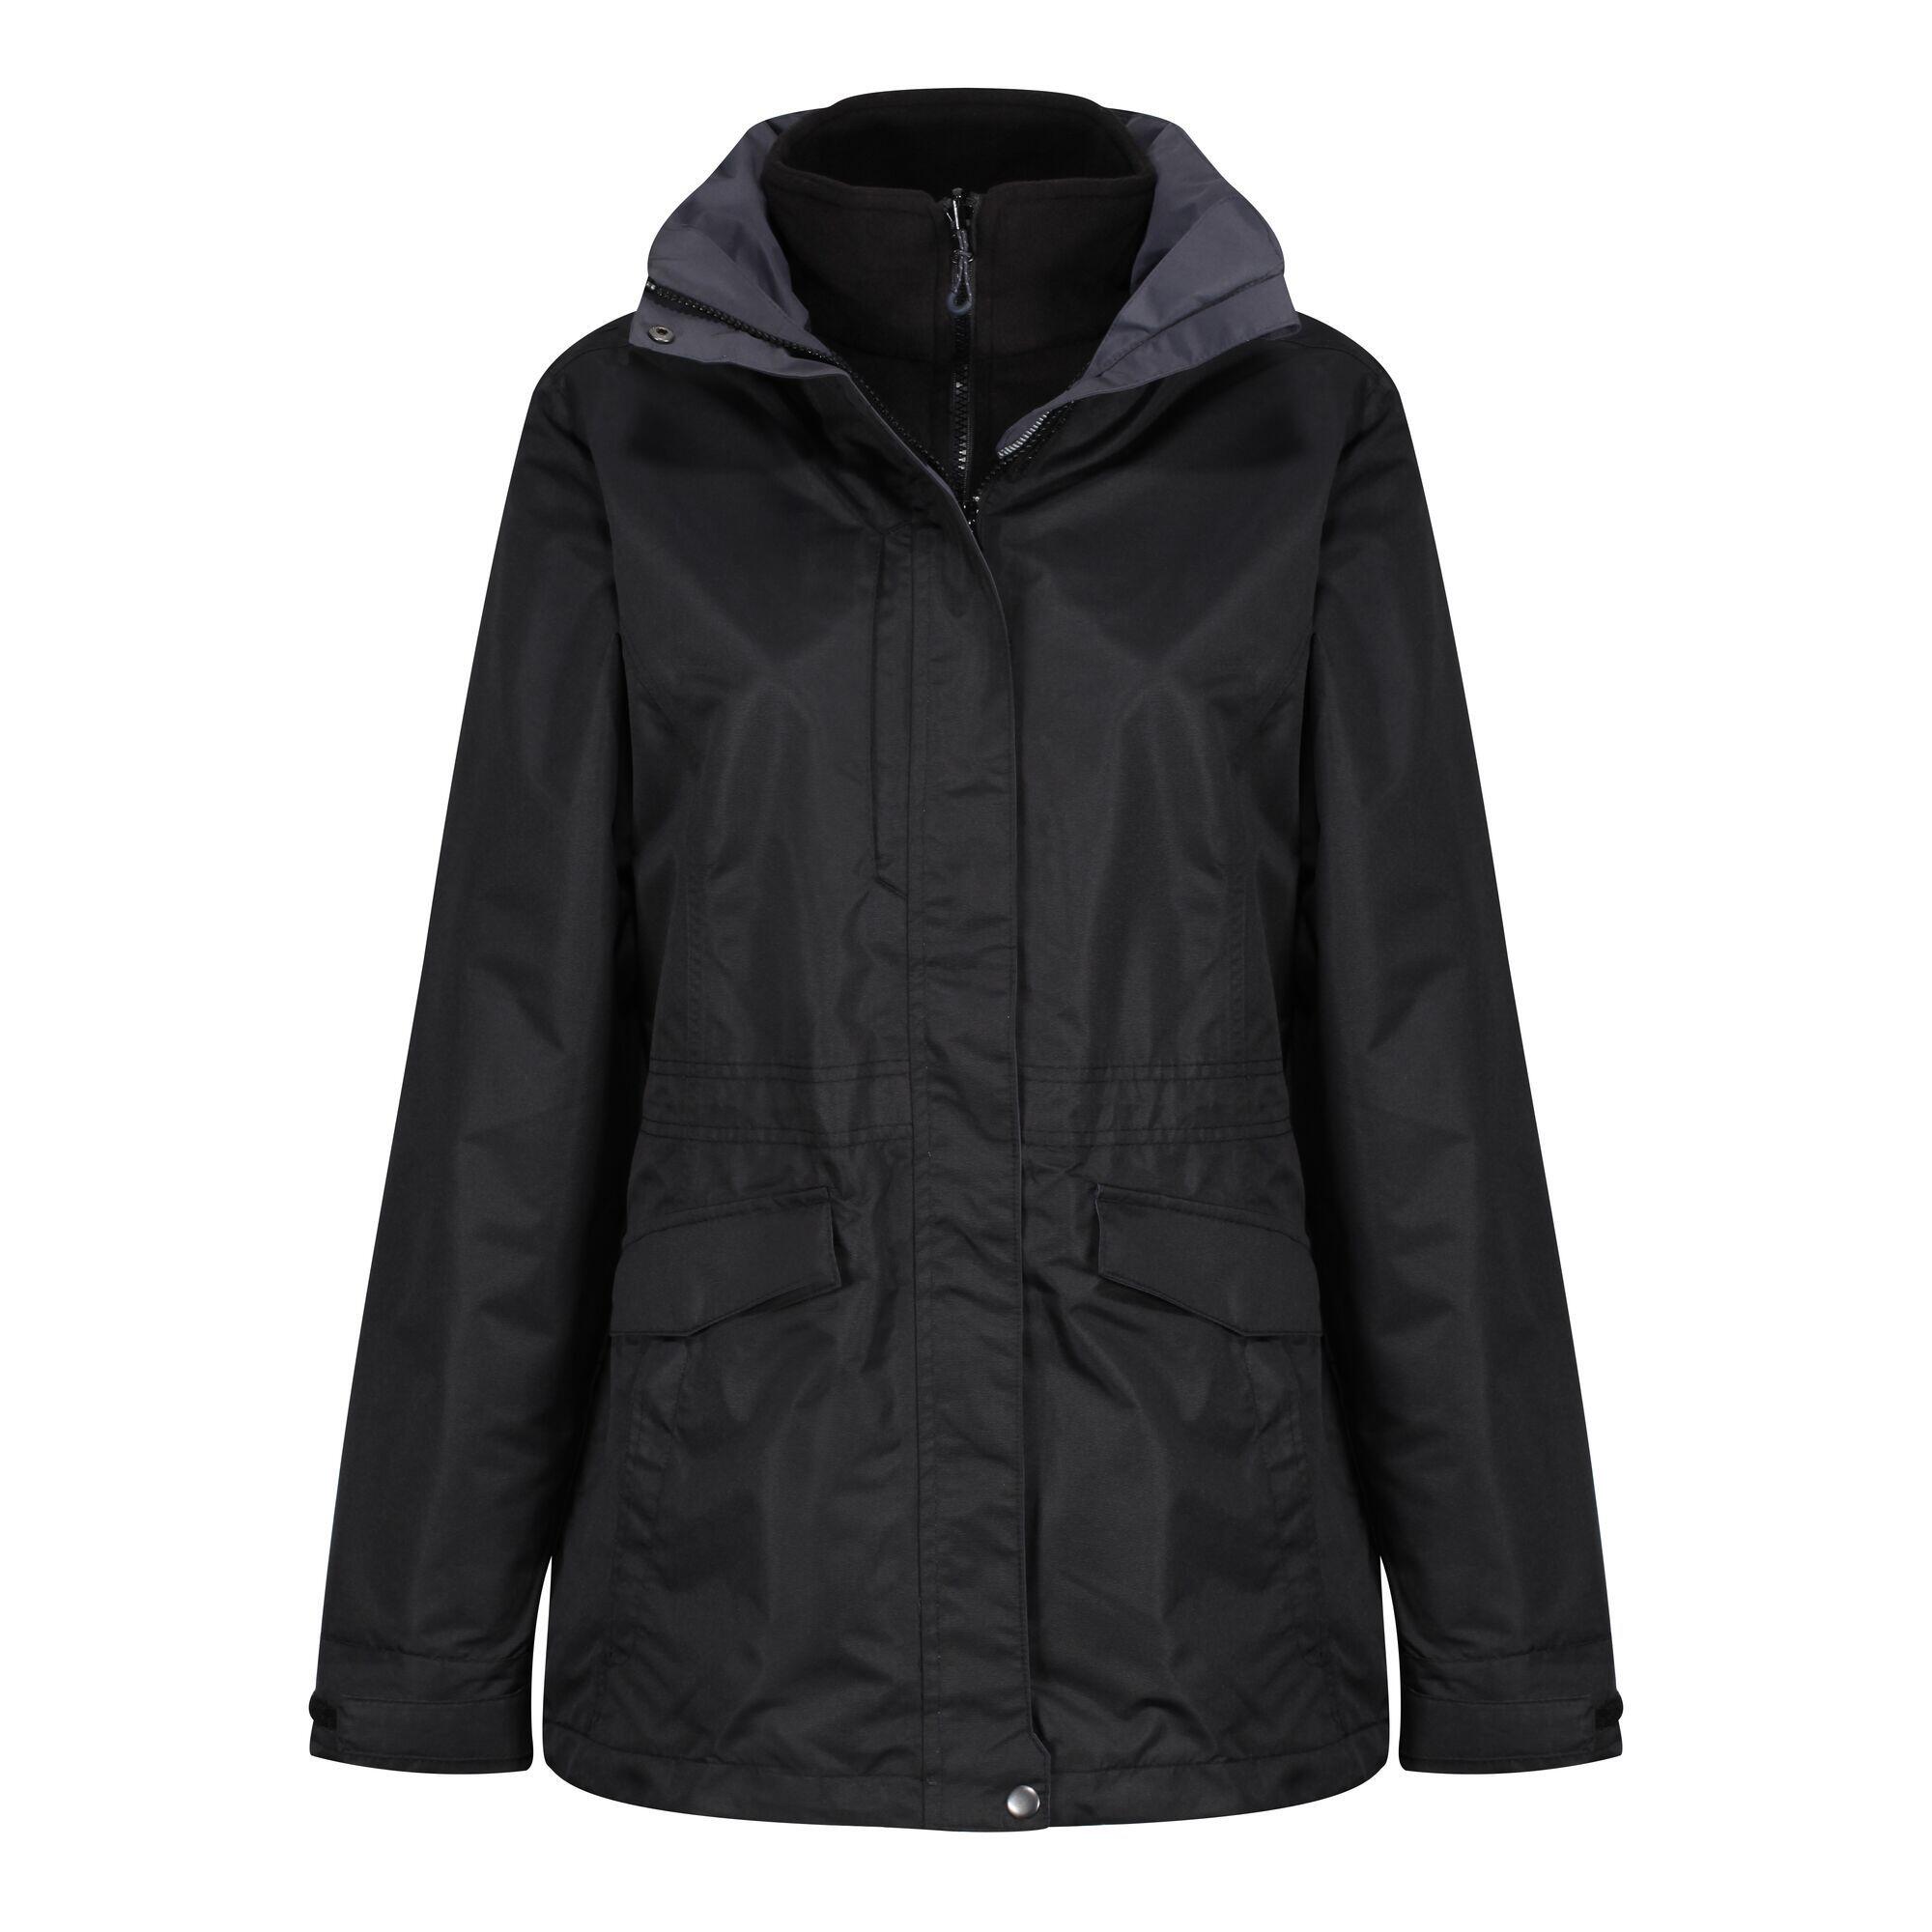 Womens/Ladies Benson III 3in1 Breathable Jacket (Black/Black) 4/5